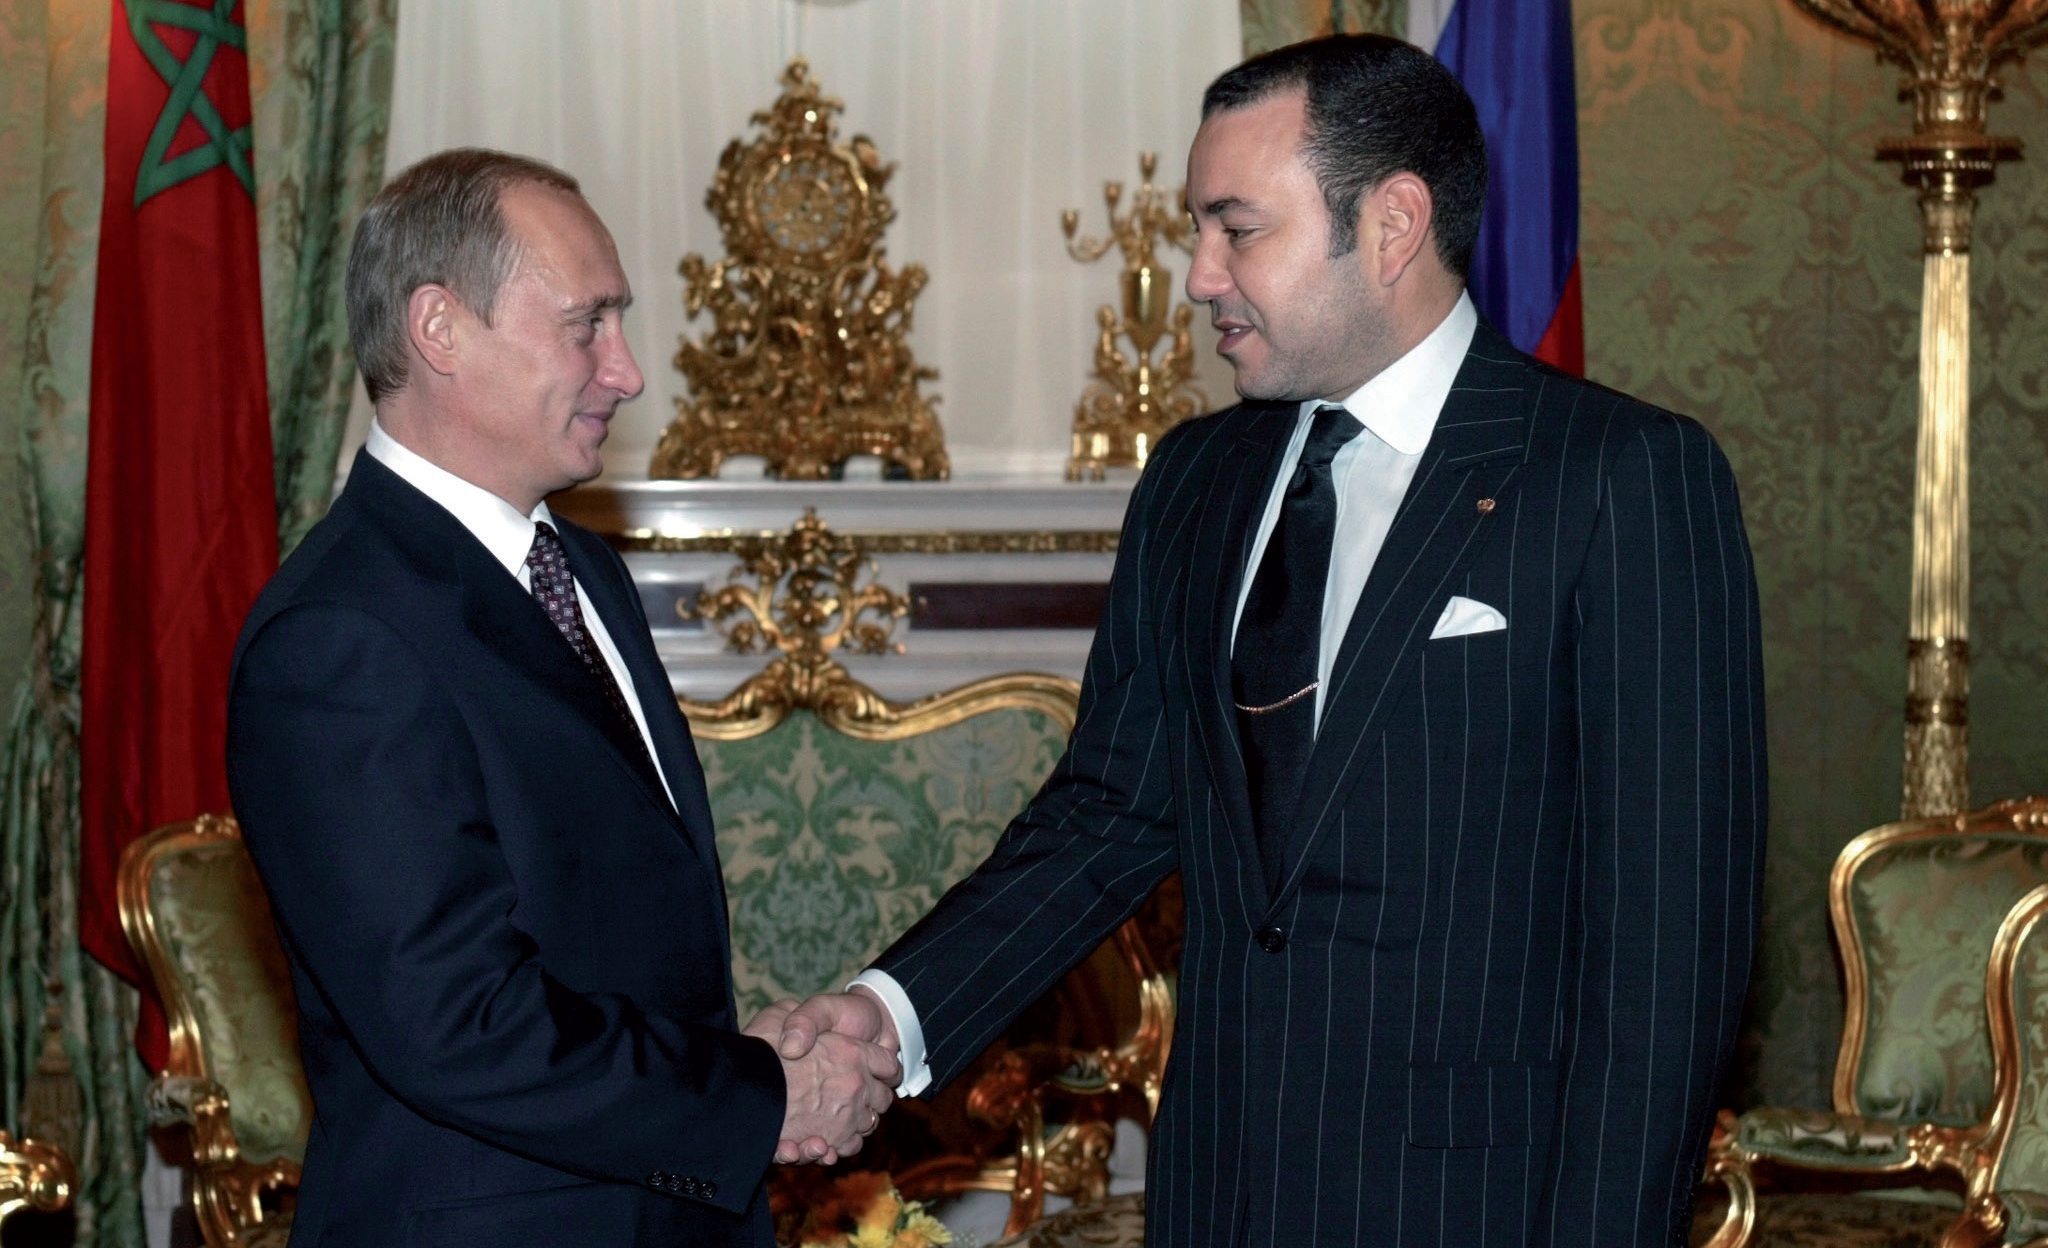 La rencontre, en 2002, entre le Souverain et le Président russe a ouvert
la voie pour l’approfondissement des relations maroco-russes.